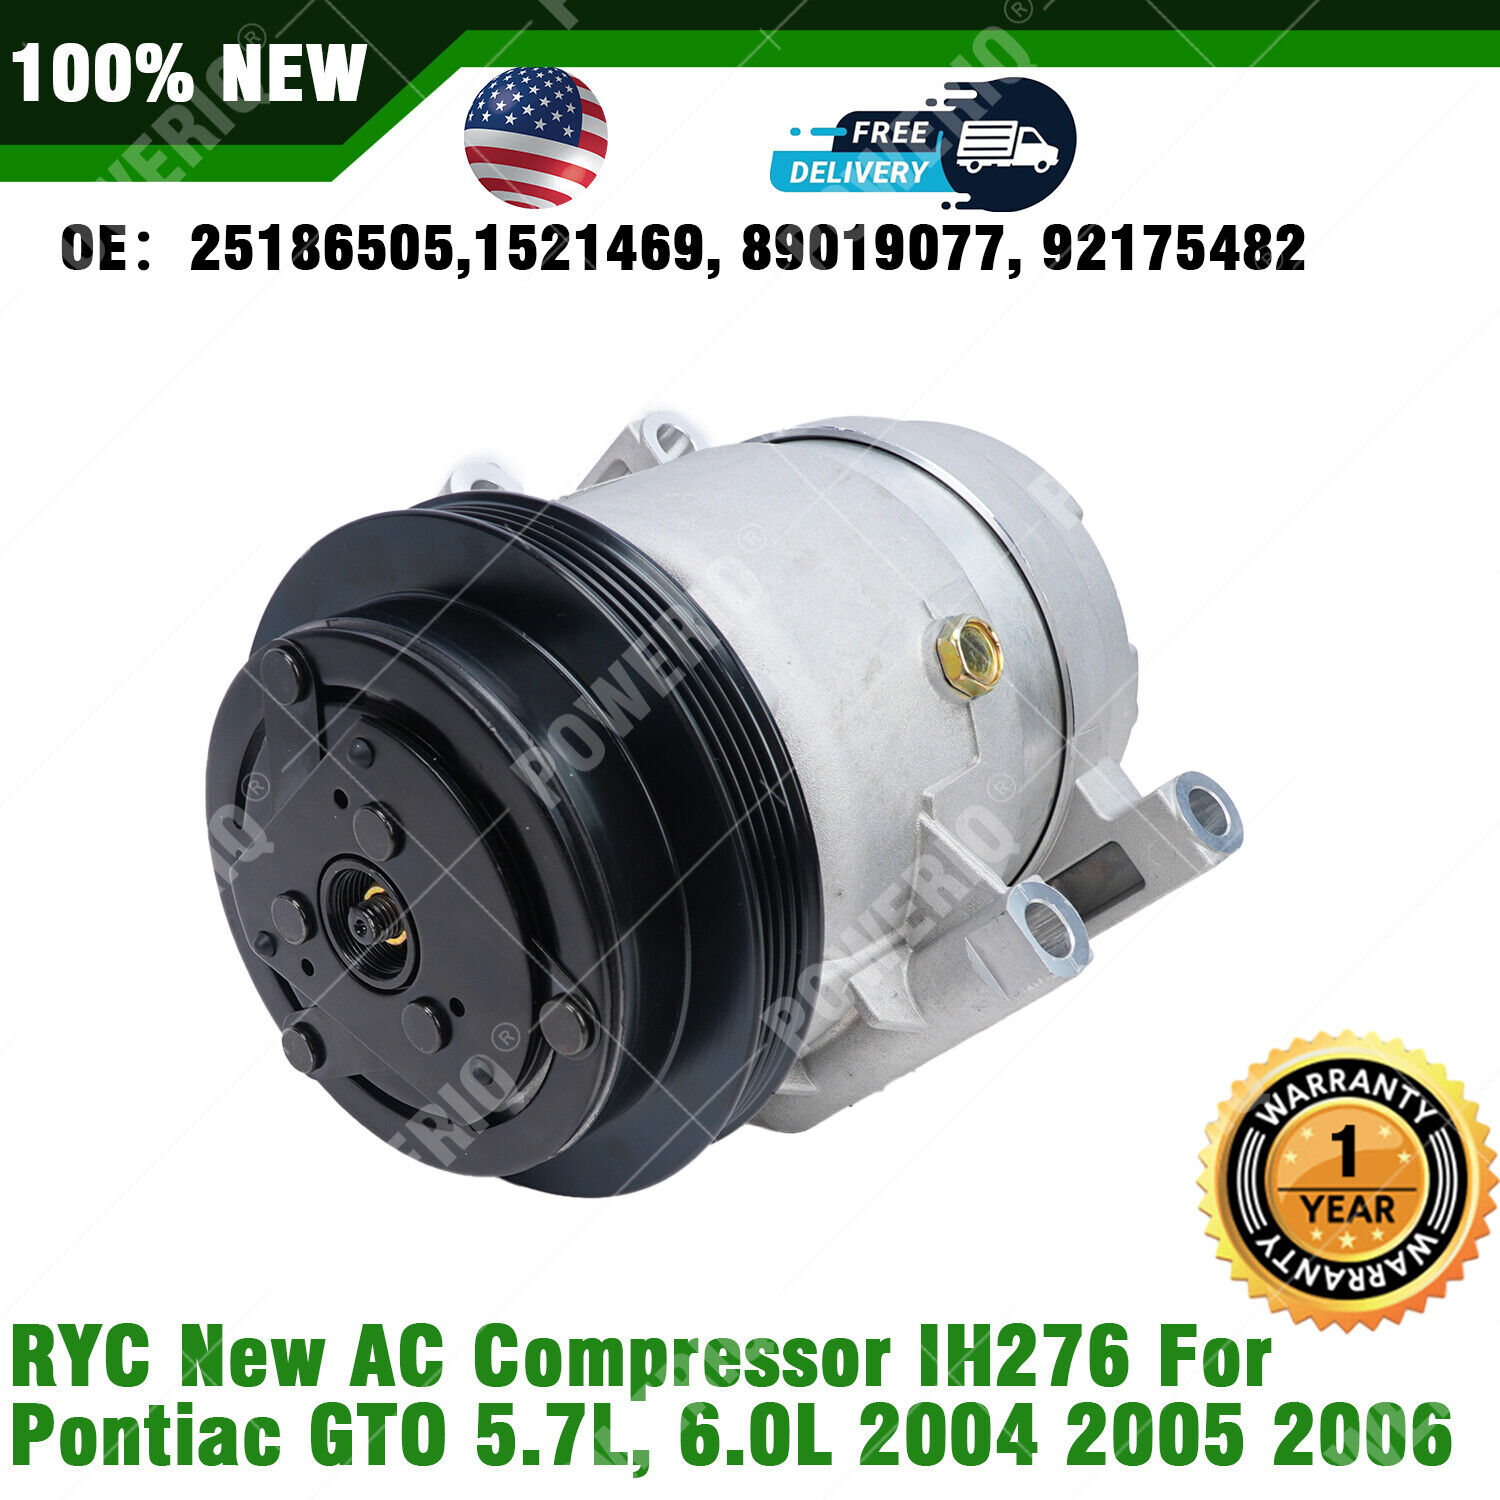 RYC New AC Compressor IH276 Fits Pontiac GTO 5.7L, 6.0L 2004 2005 2006